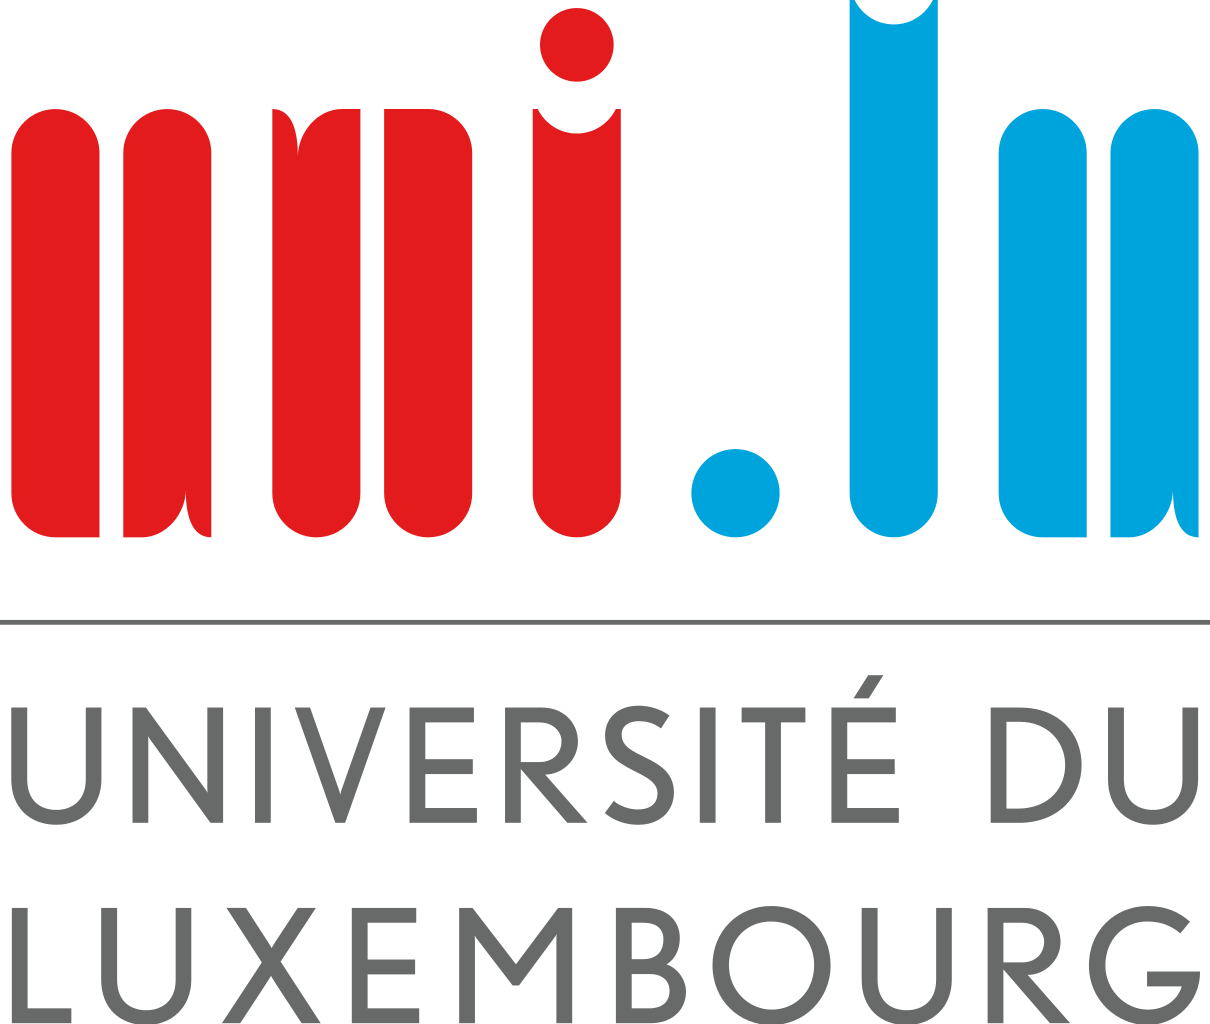 Logo Université de Luxembourg